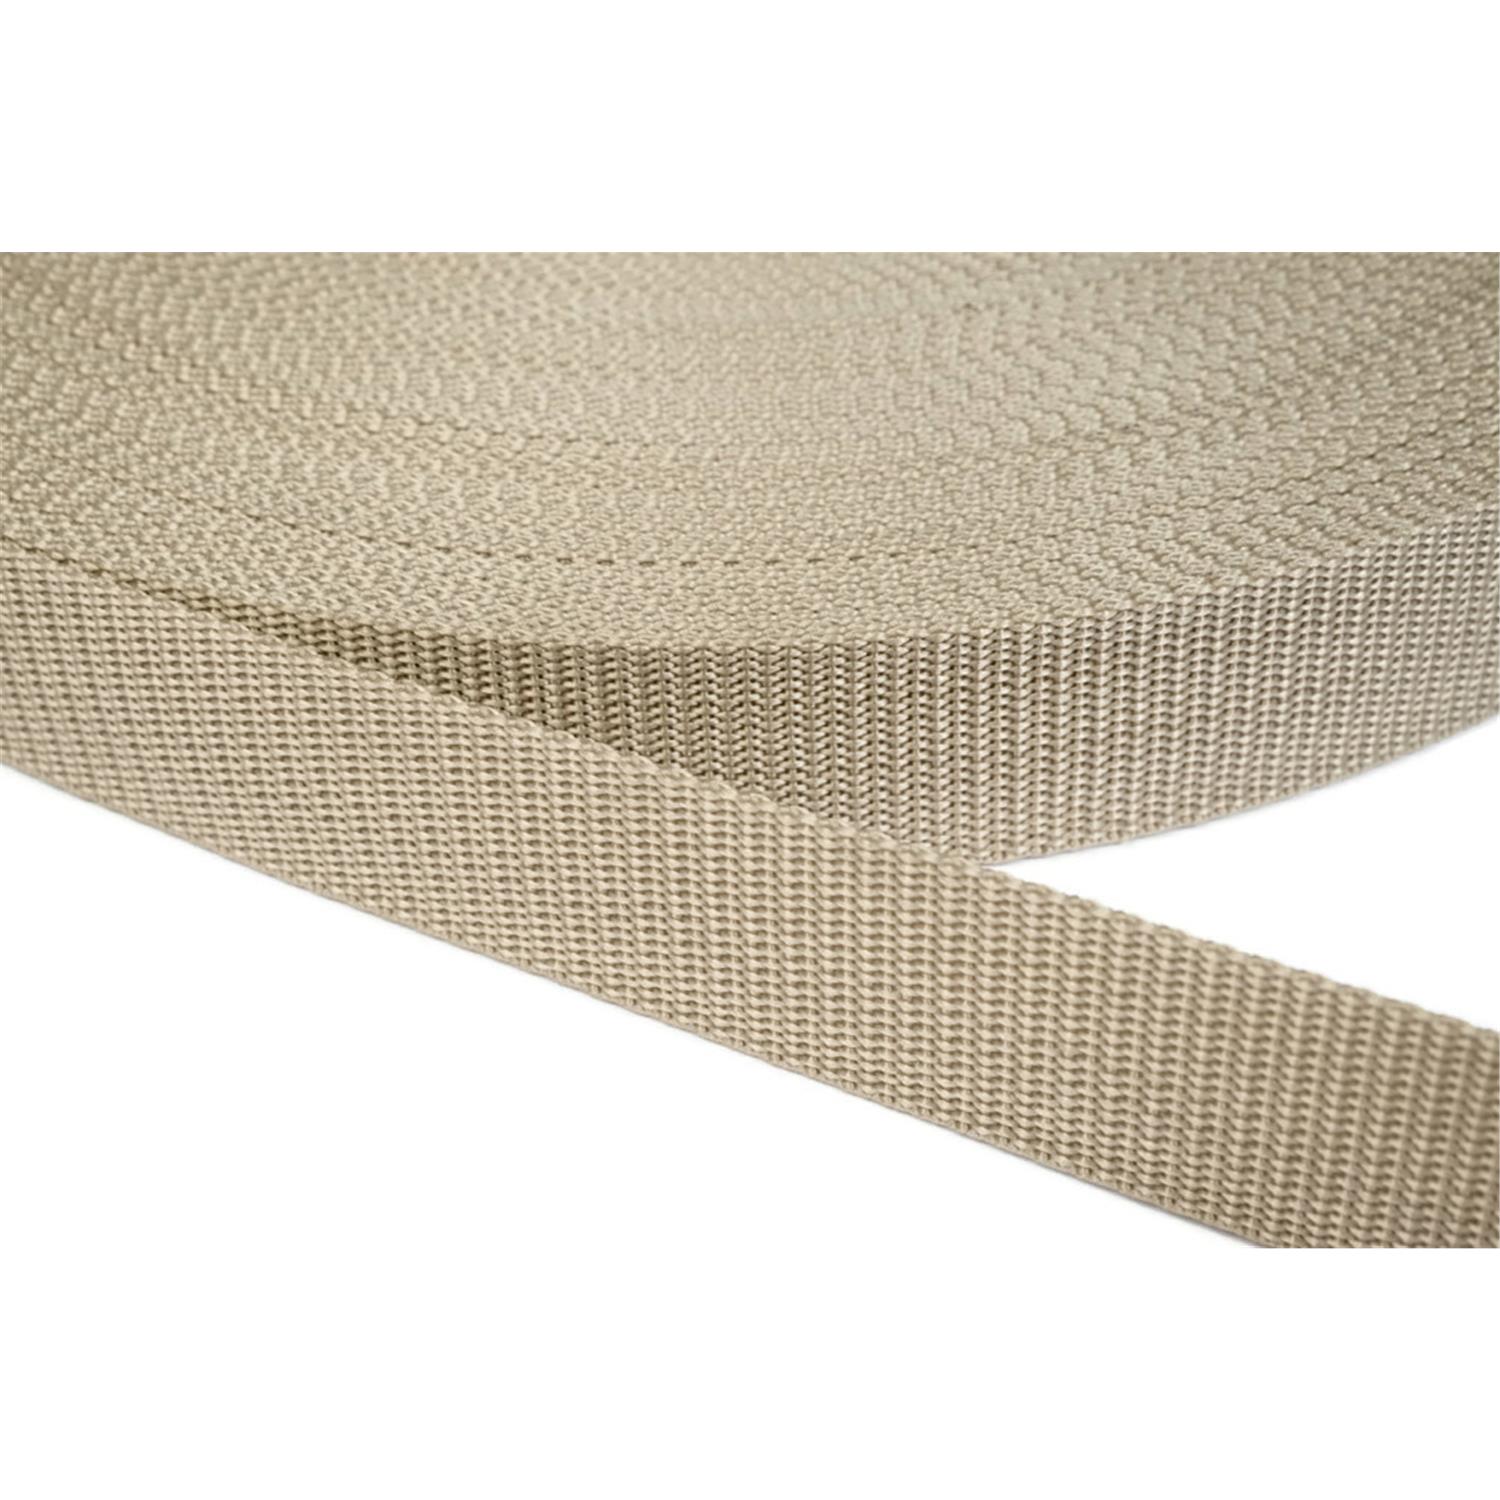 Gurtband 40mm breit aus Polypropylen in 41 Farben 03 - beige 6 Meter